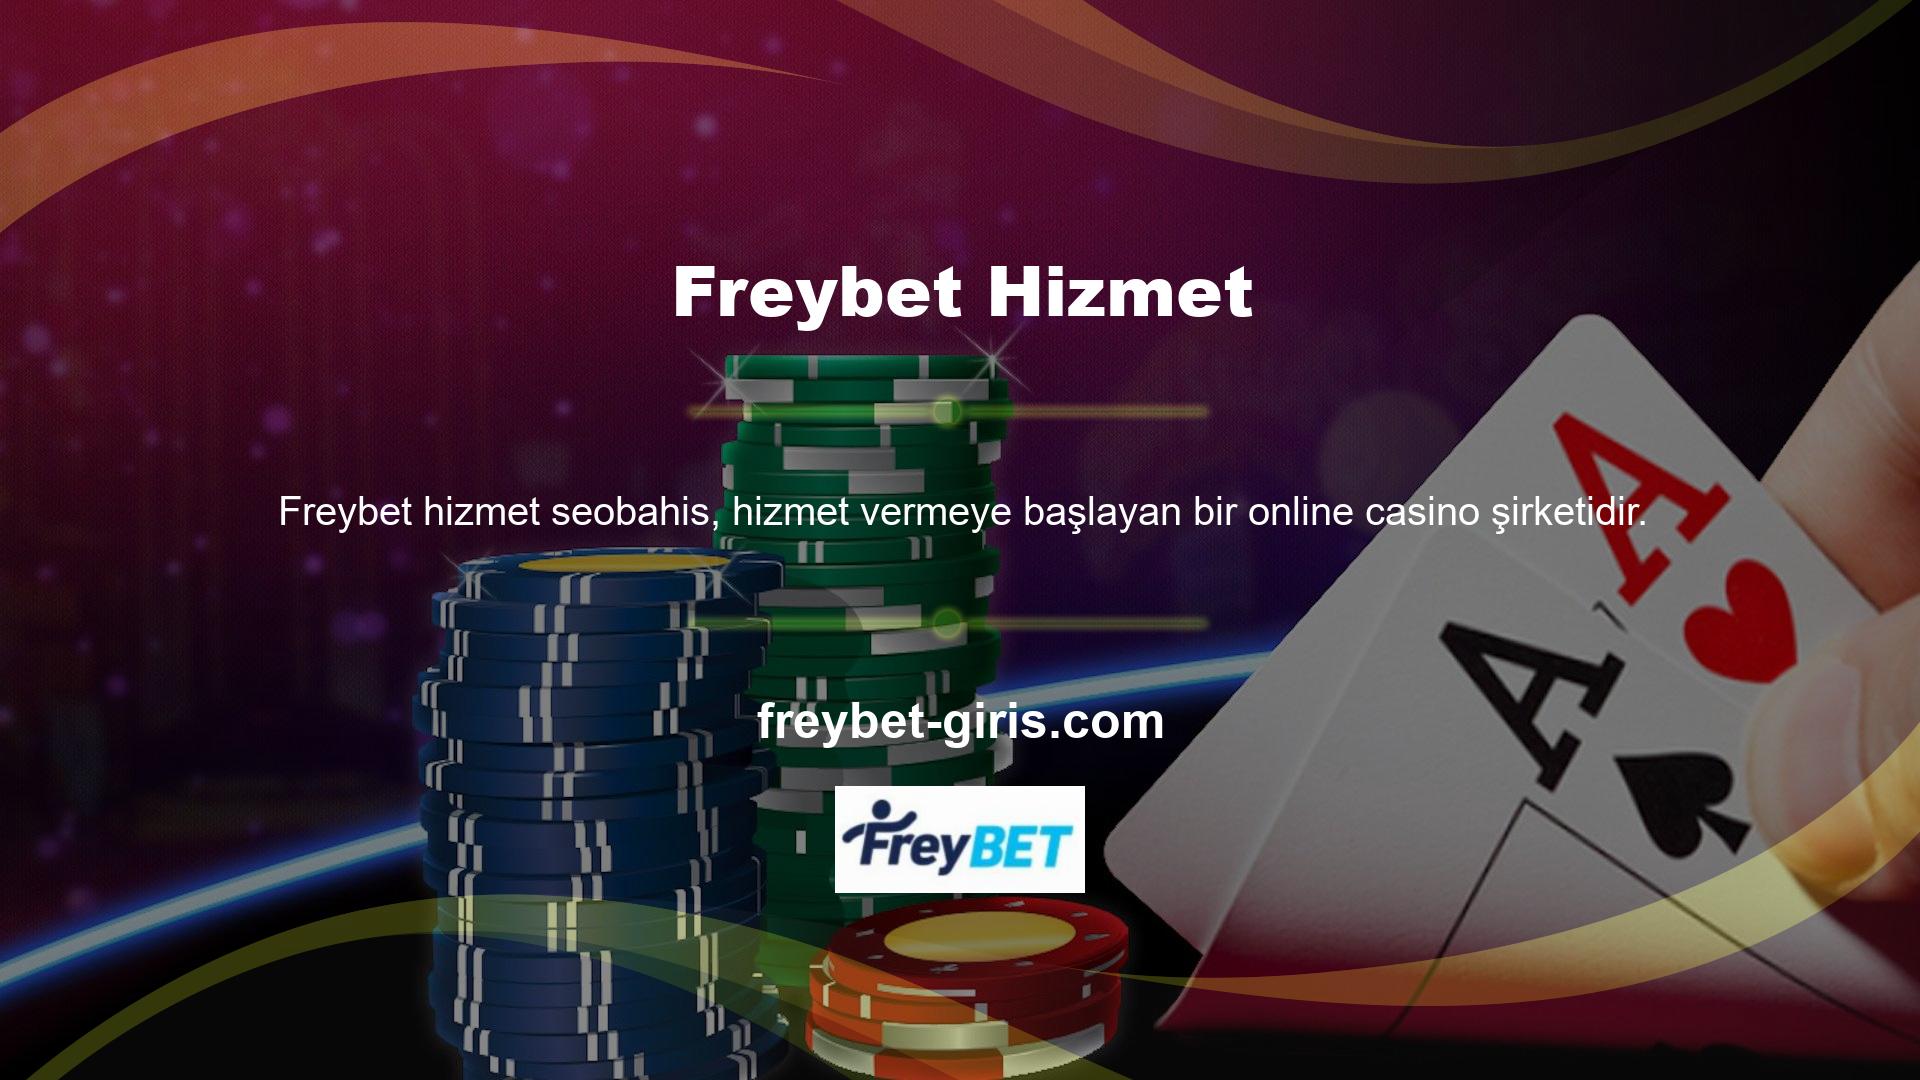 Tanınmış bir çevrimiçi casino sitesi olan Freybet, casino kalitesini ön planda tutan olağanüstü oyun teklifleriyle tanınır